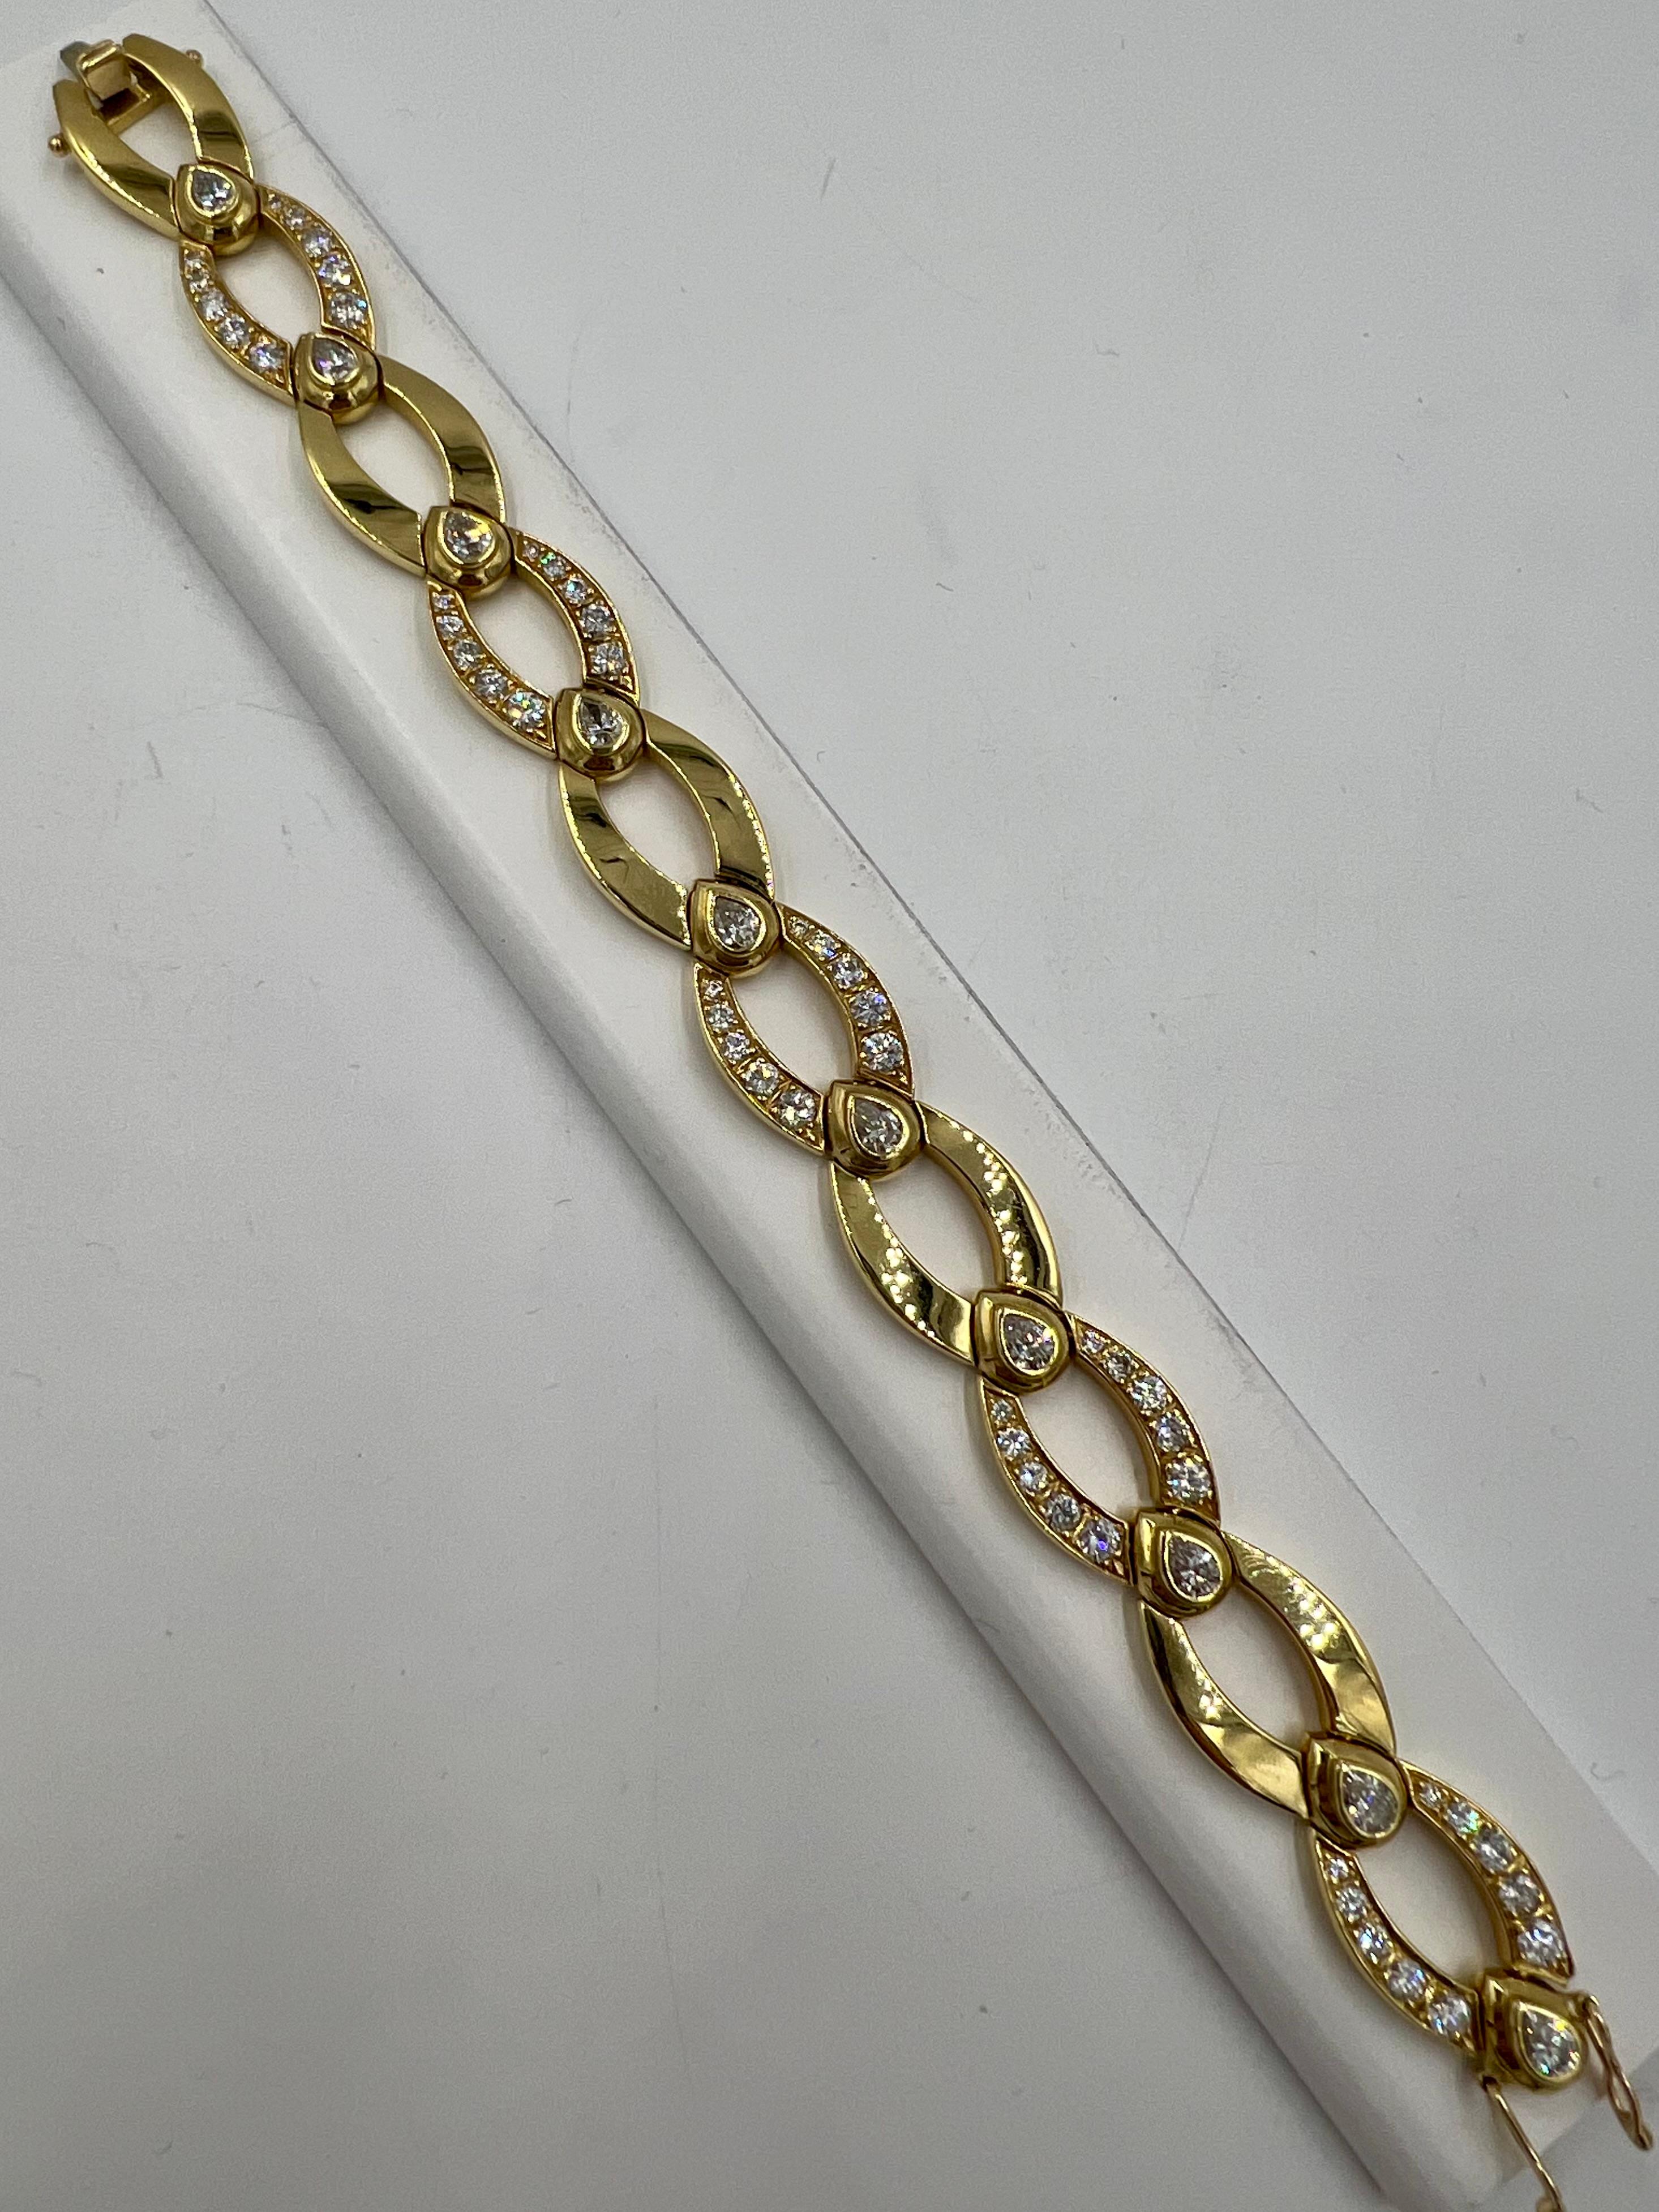 1970 Bracelet à maillons en or jaune avec diamants ronds et poires.

Les années 1970 ont été une époque de déclarations de mode audacieuses et de créations de bijoux uniques. Le bracelet à maillons en or jaune, orné de diamants ronds et en forme de